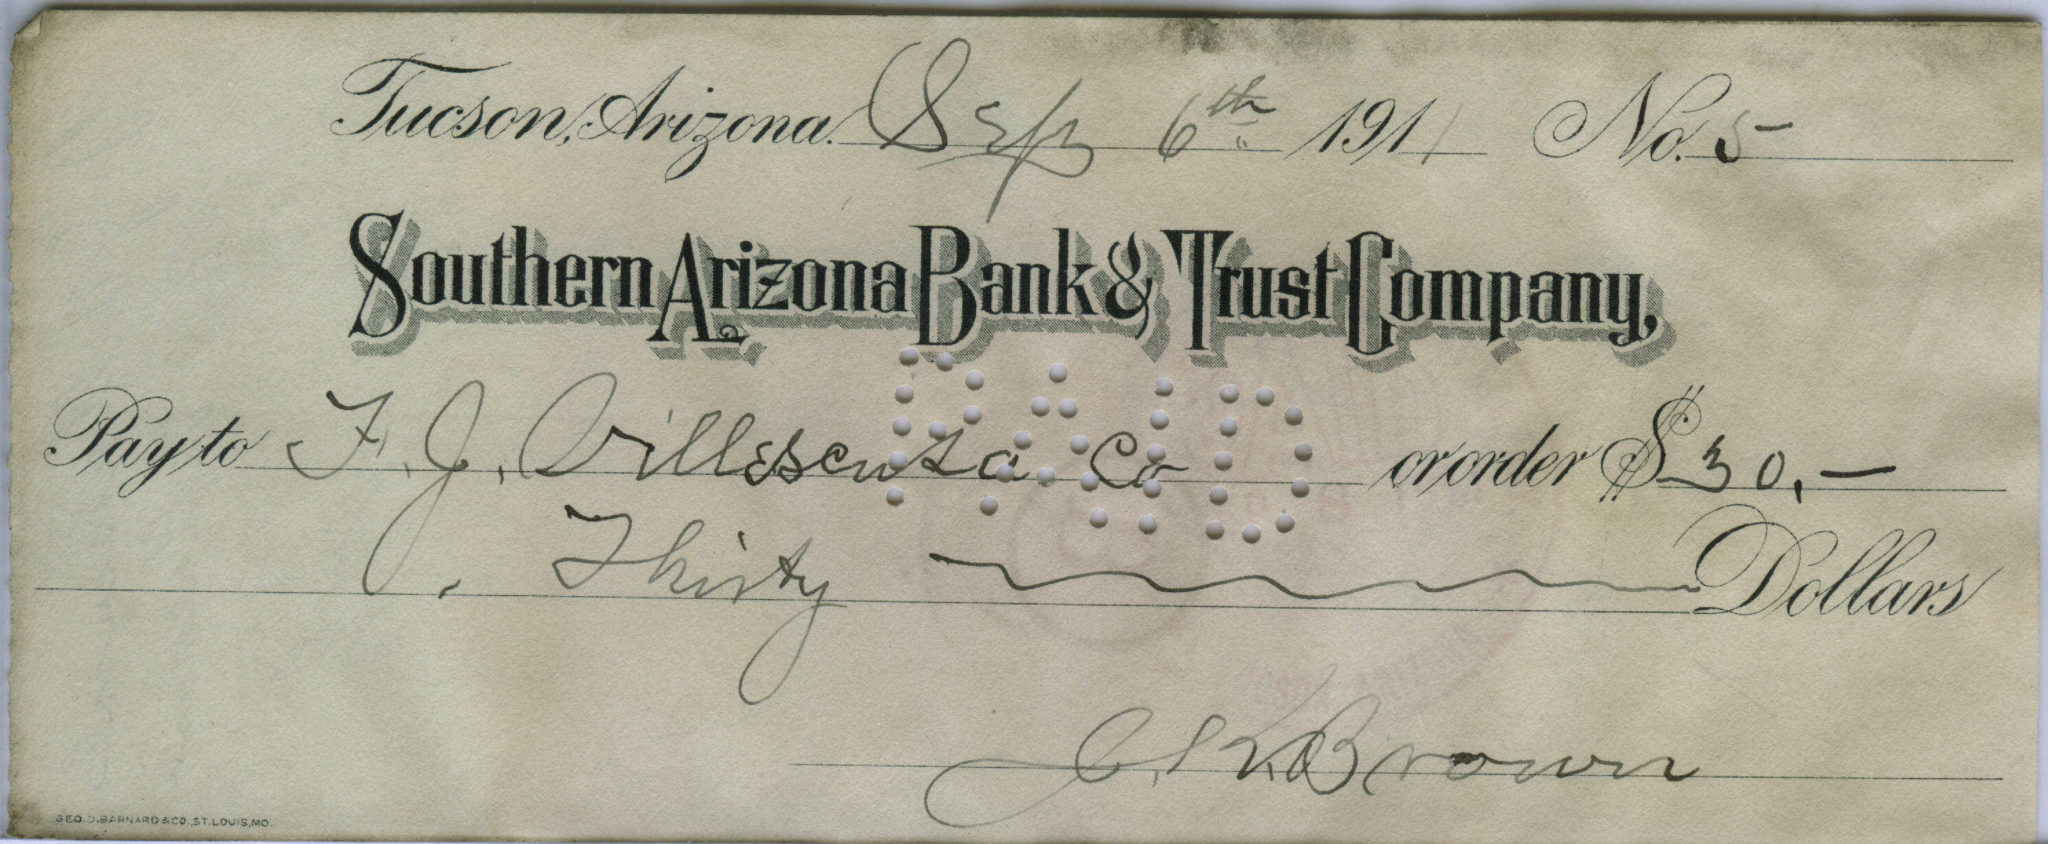 Tucson Arizona Territory check